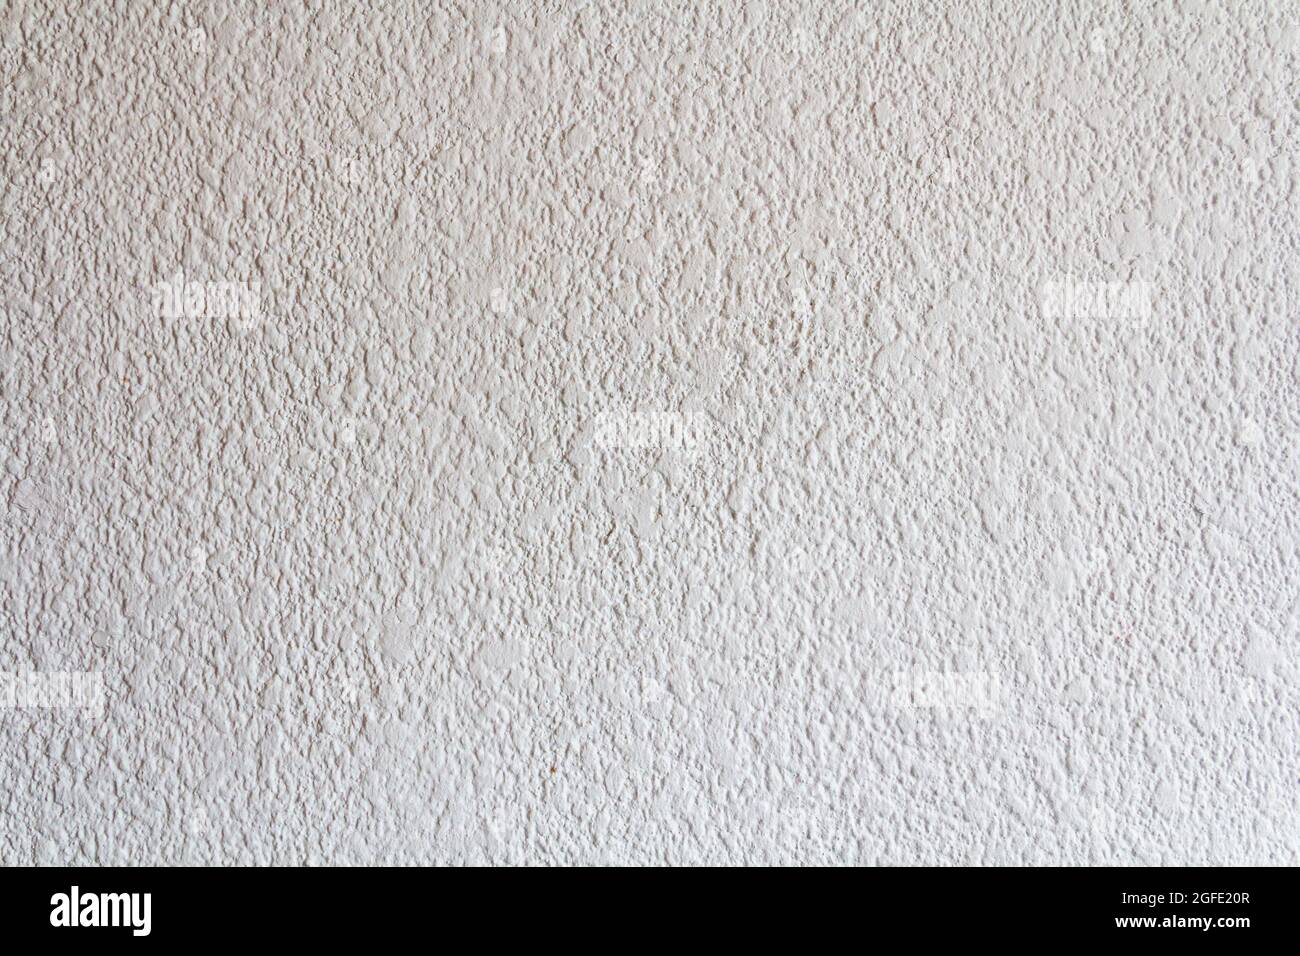 white wall Stock Photo